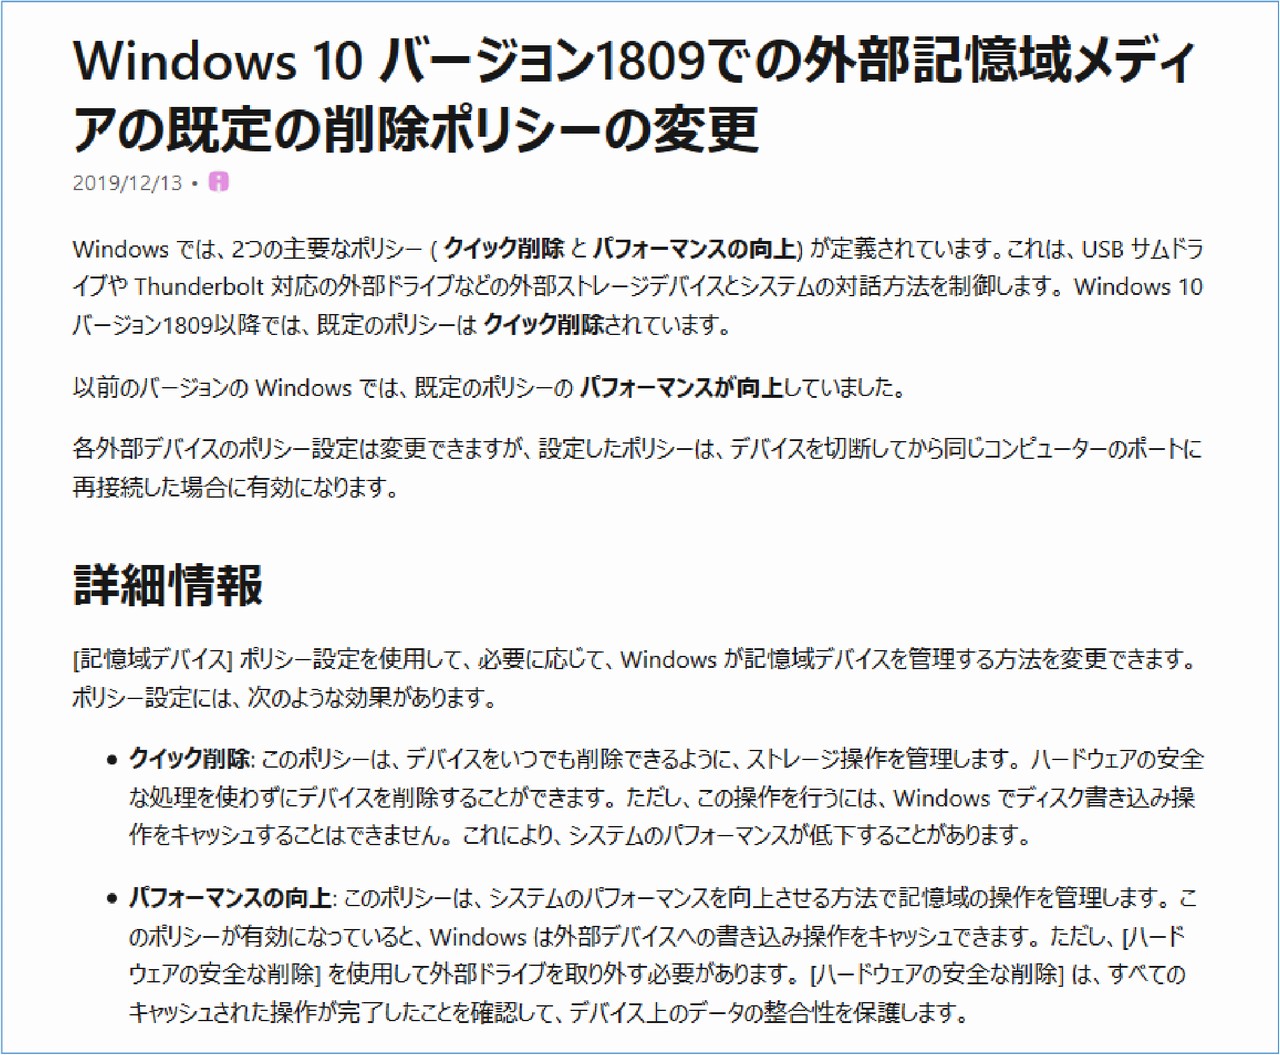 Windows10 バージョン1809での外部記憶域メディアの既定の削除ポリシーの変更